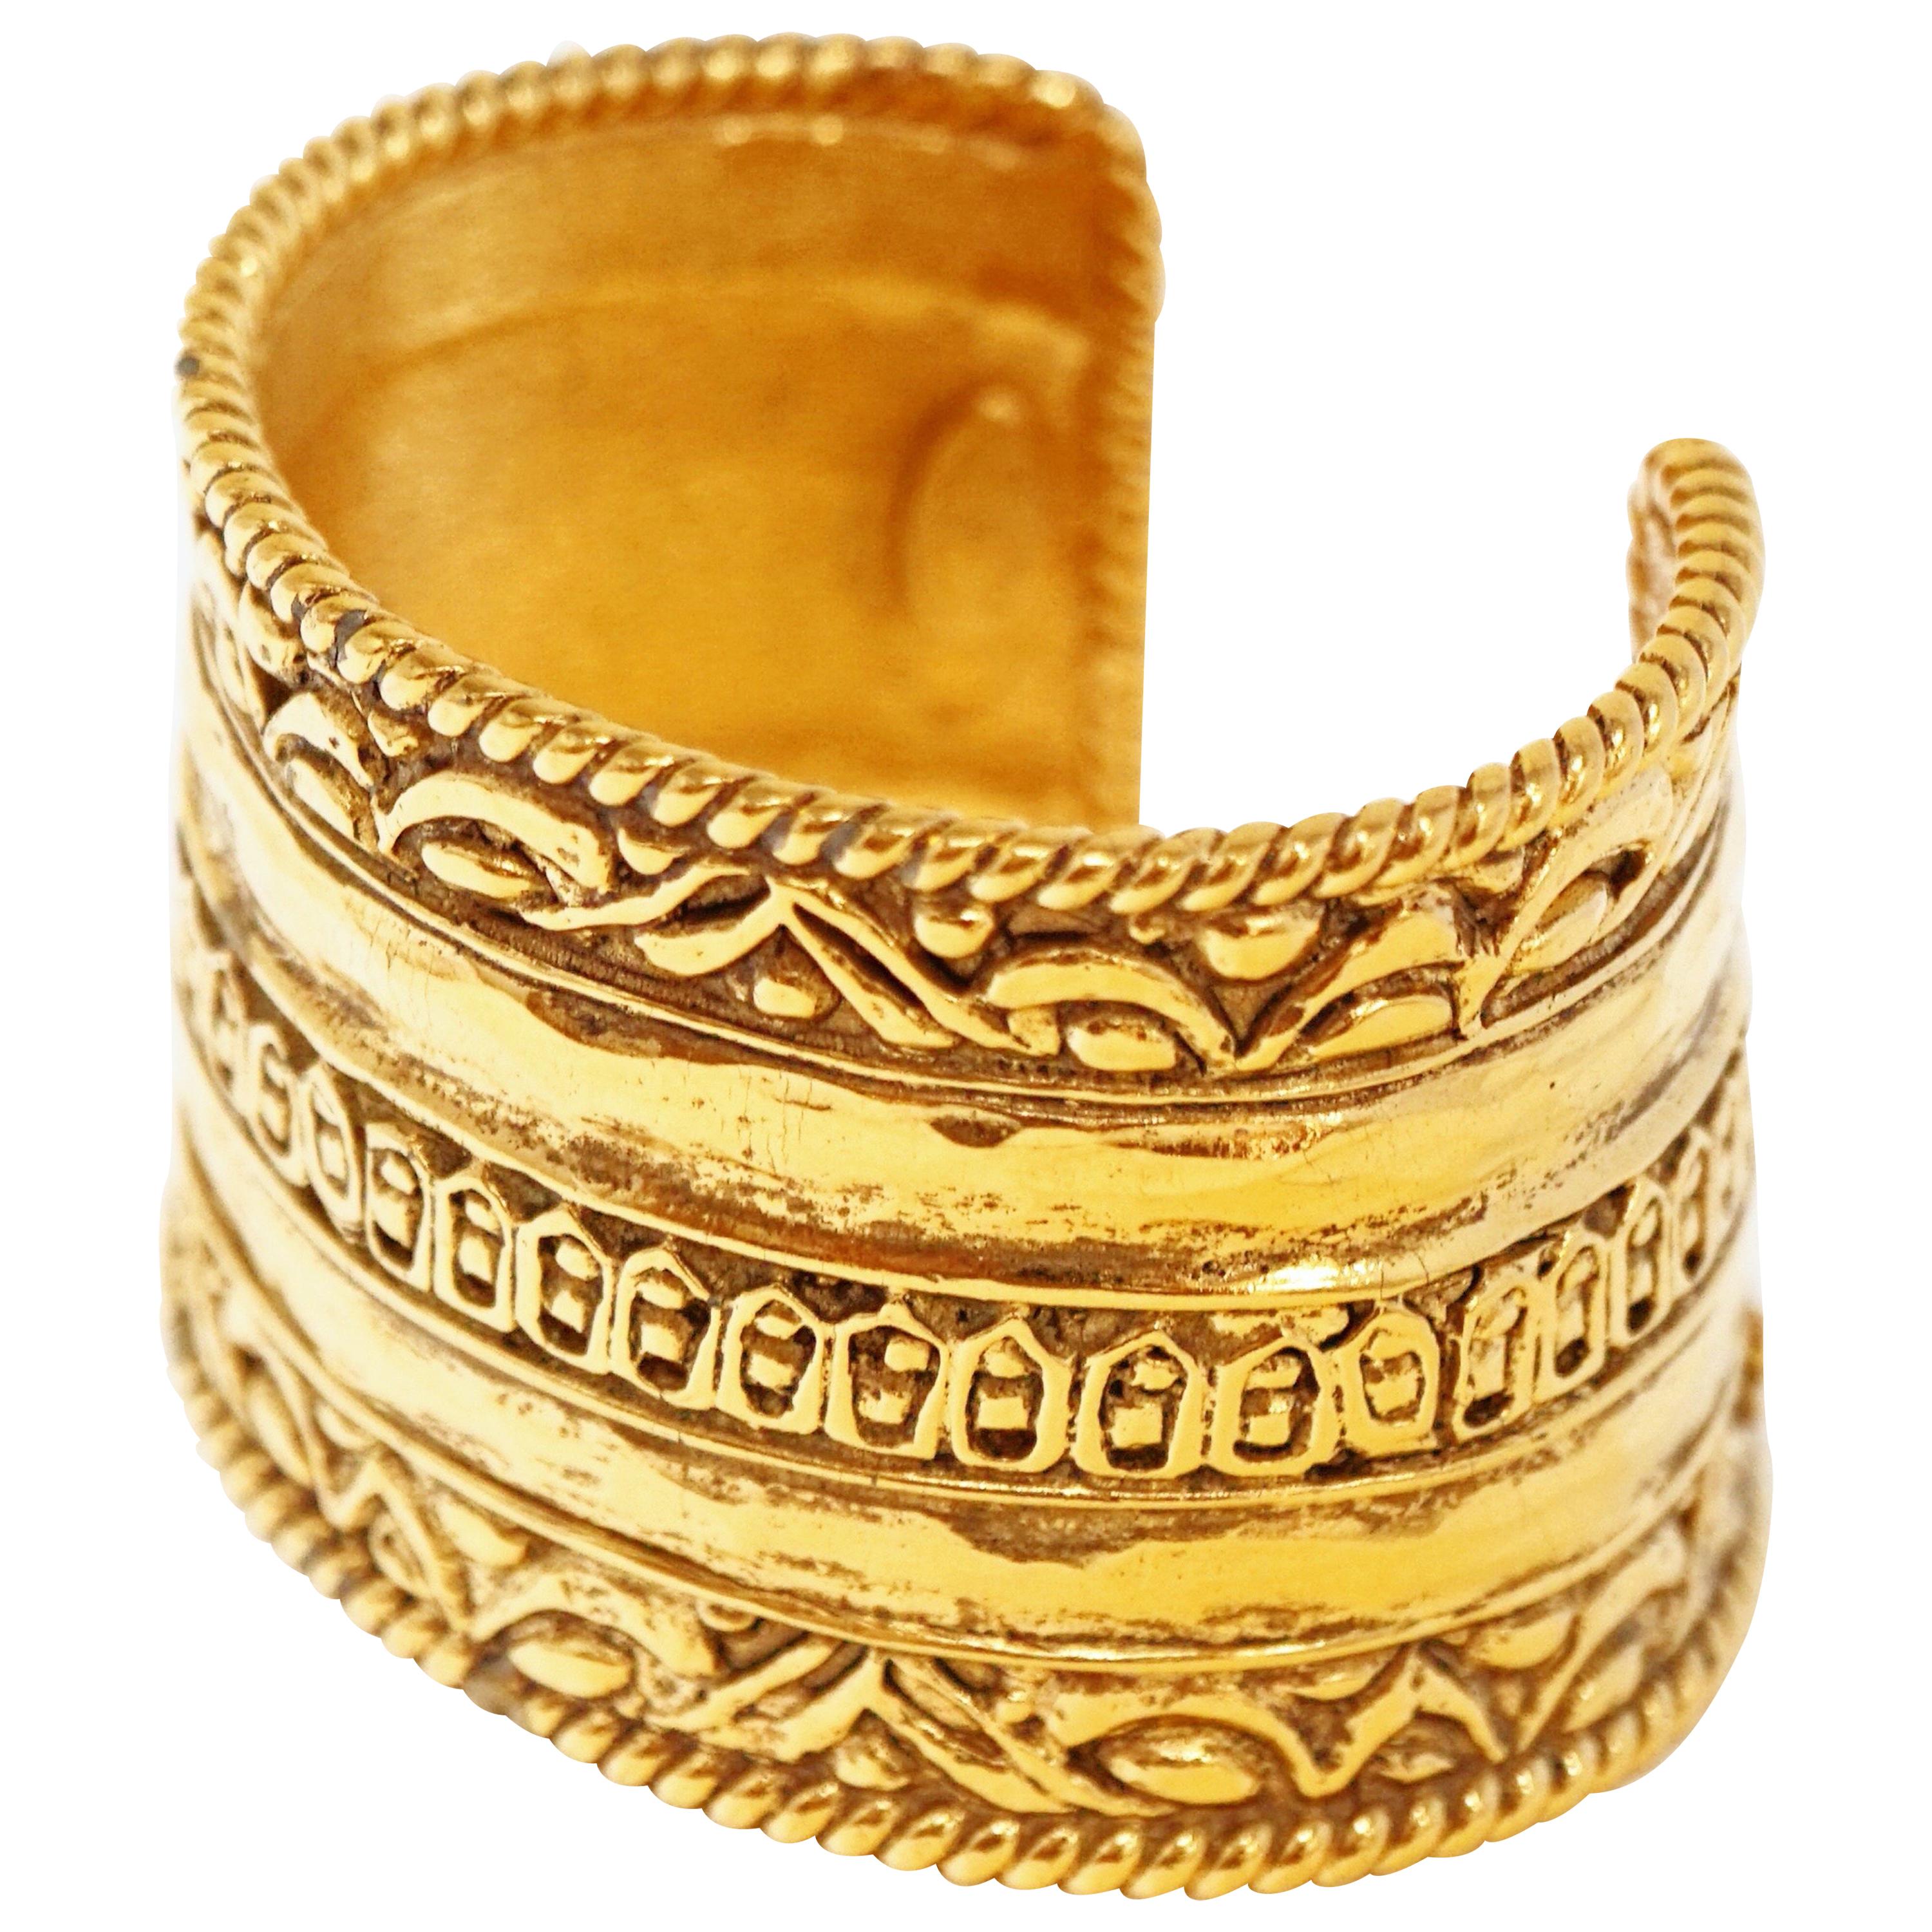 Vintage Chanel Ornate Etruscan Gilded Cuff Bracelet, Signed